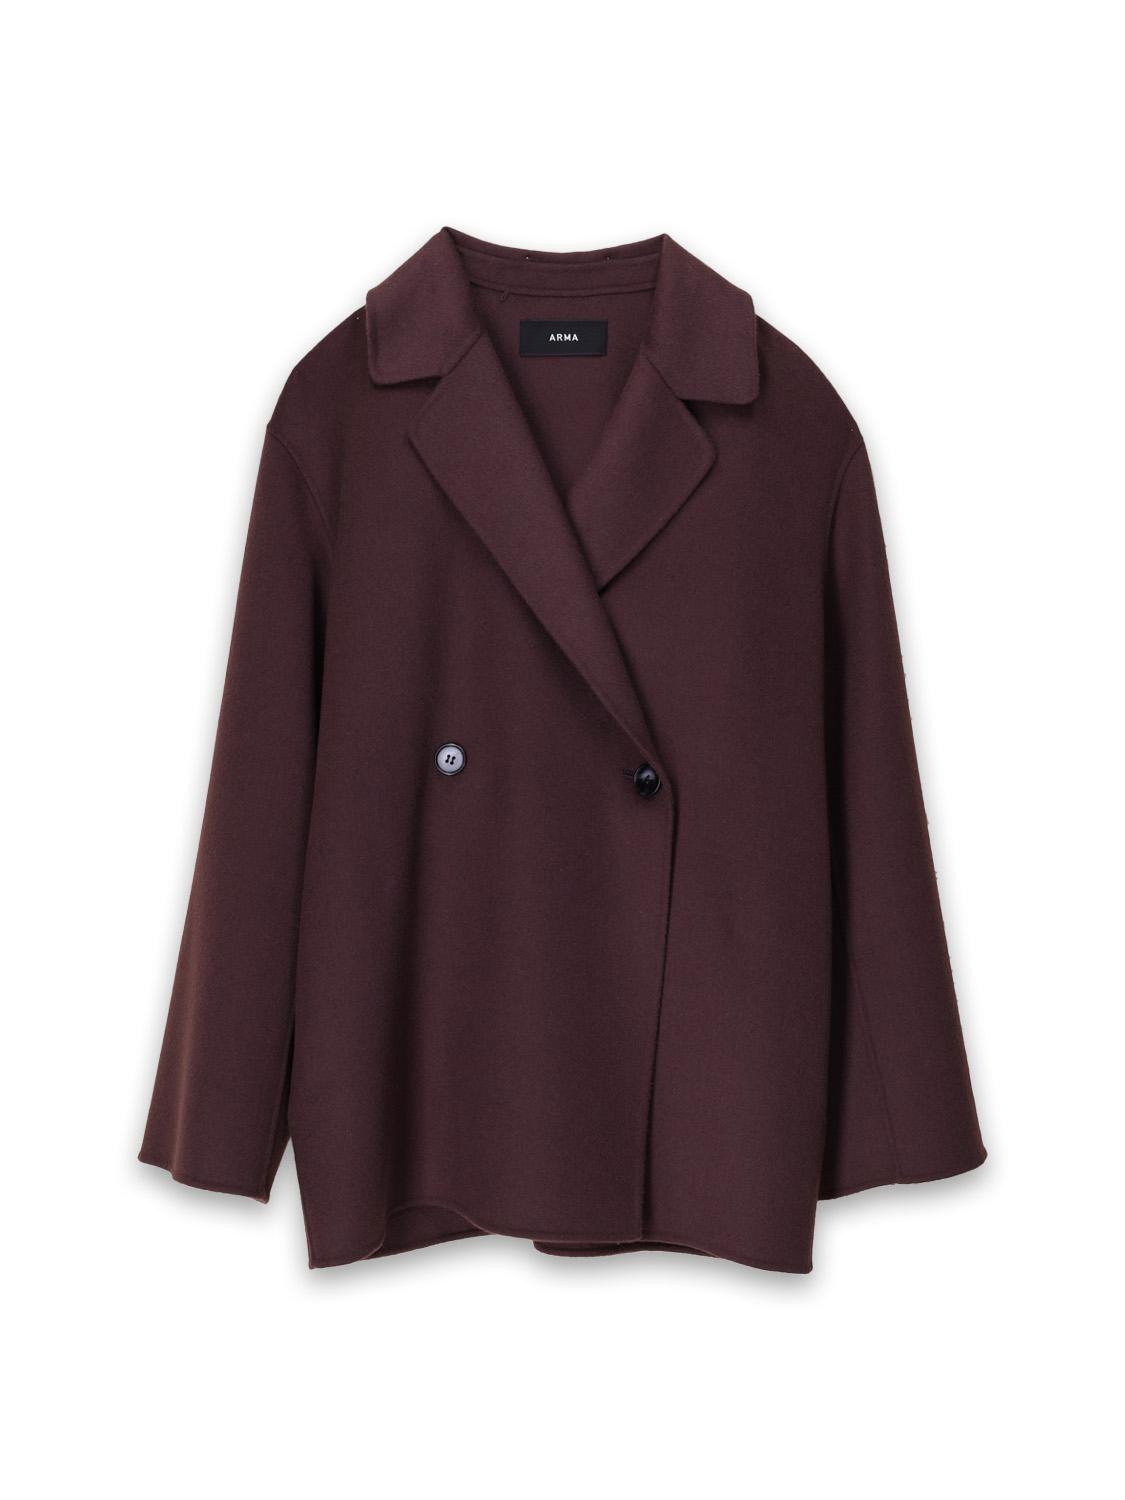 Arma Short wool coat with tie detail  brown 36